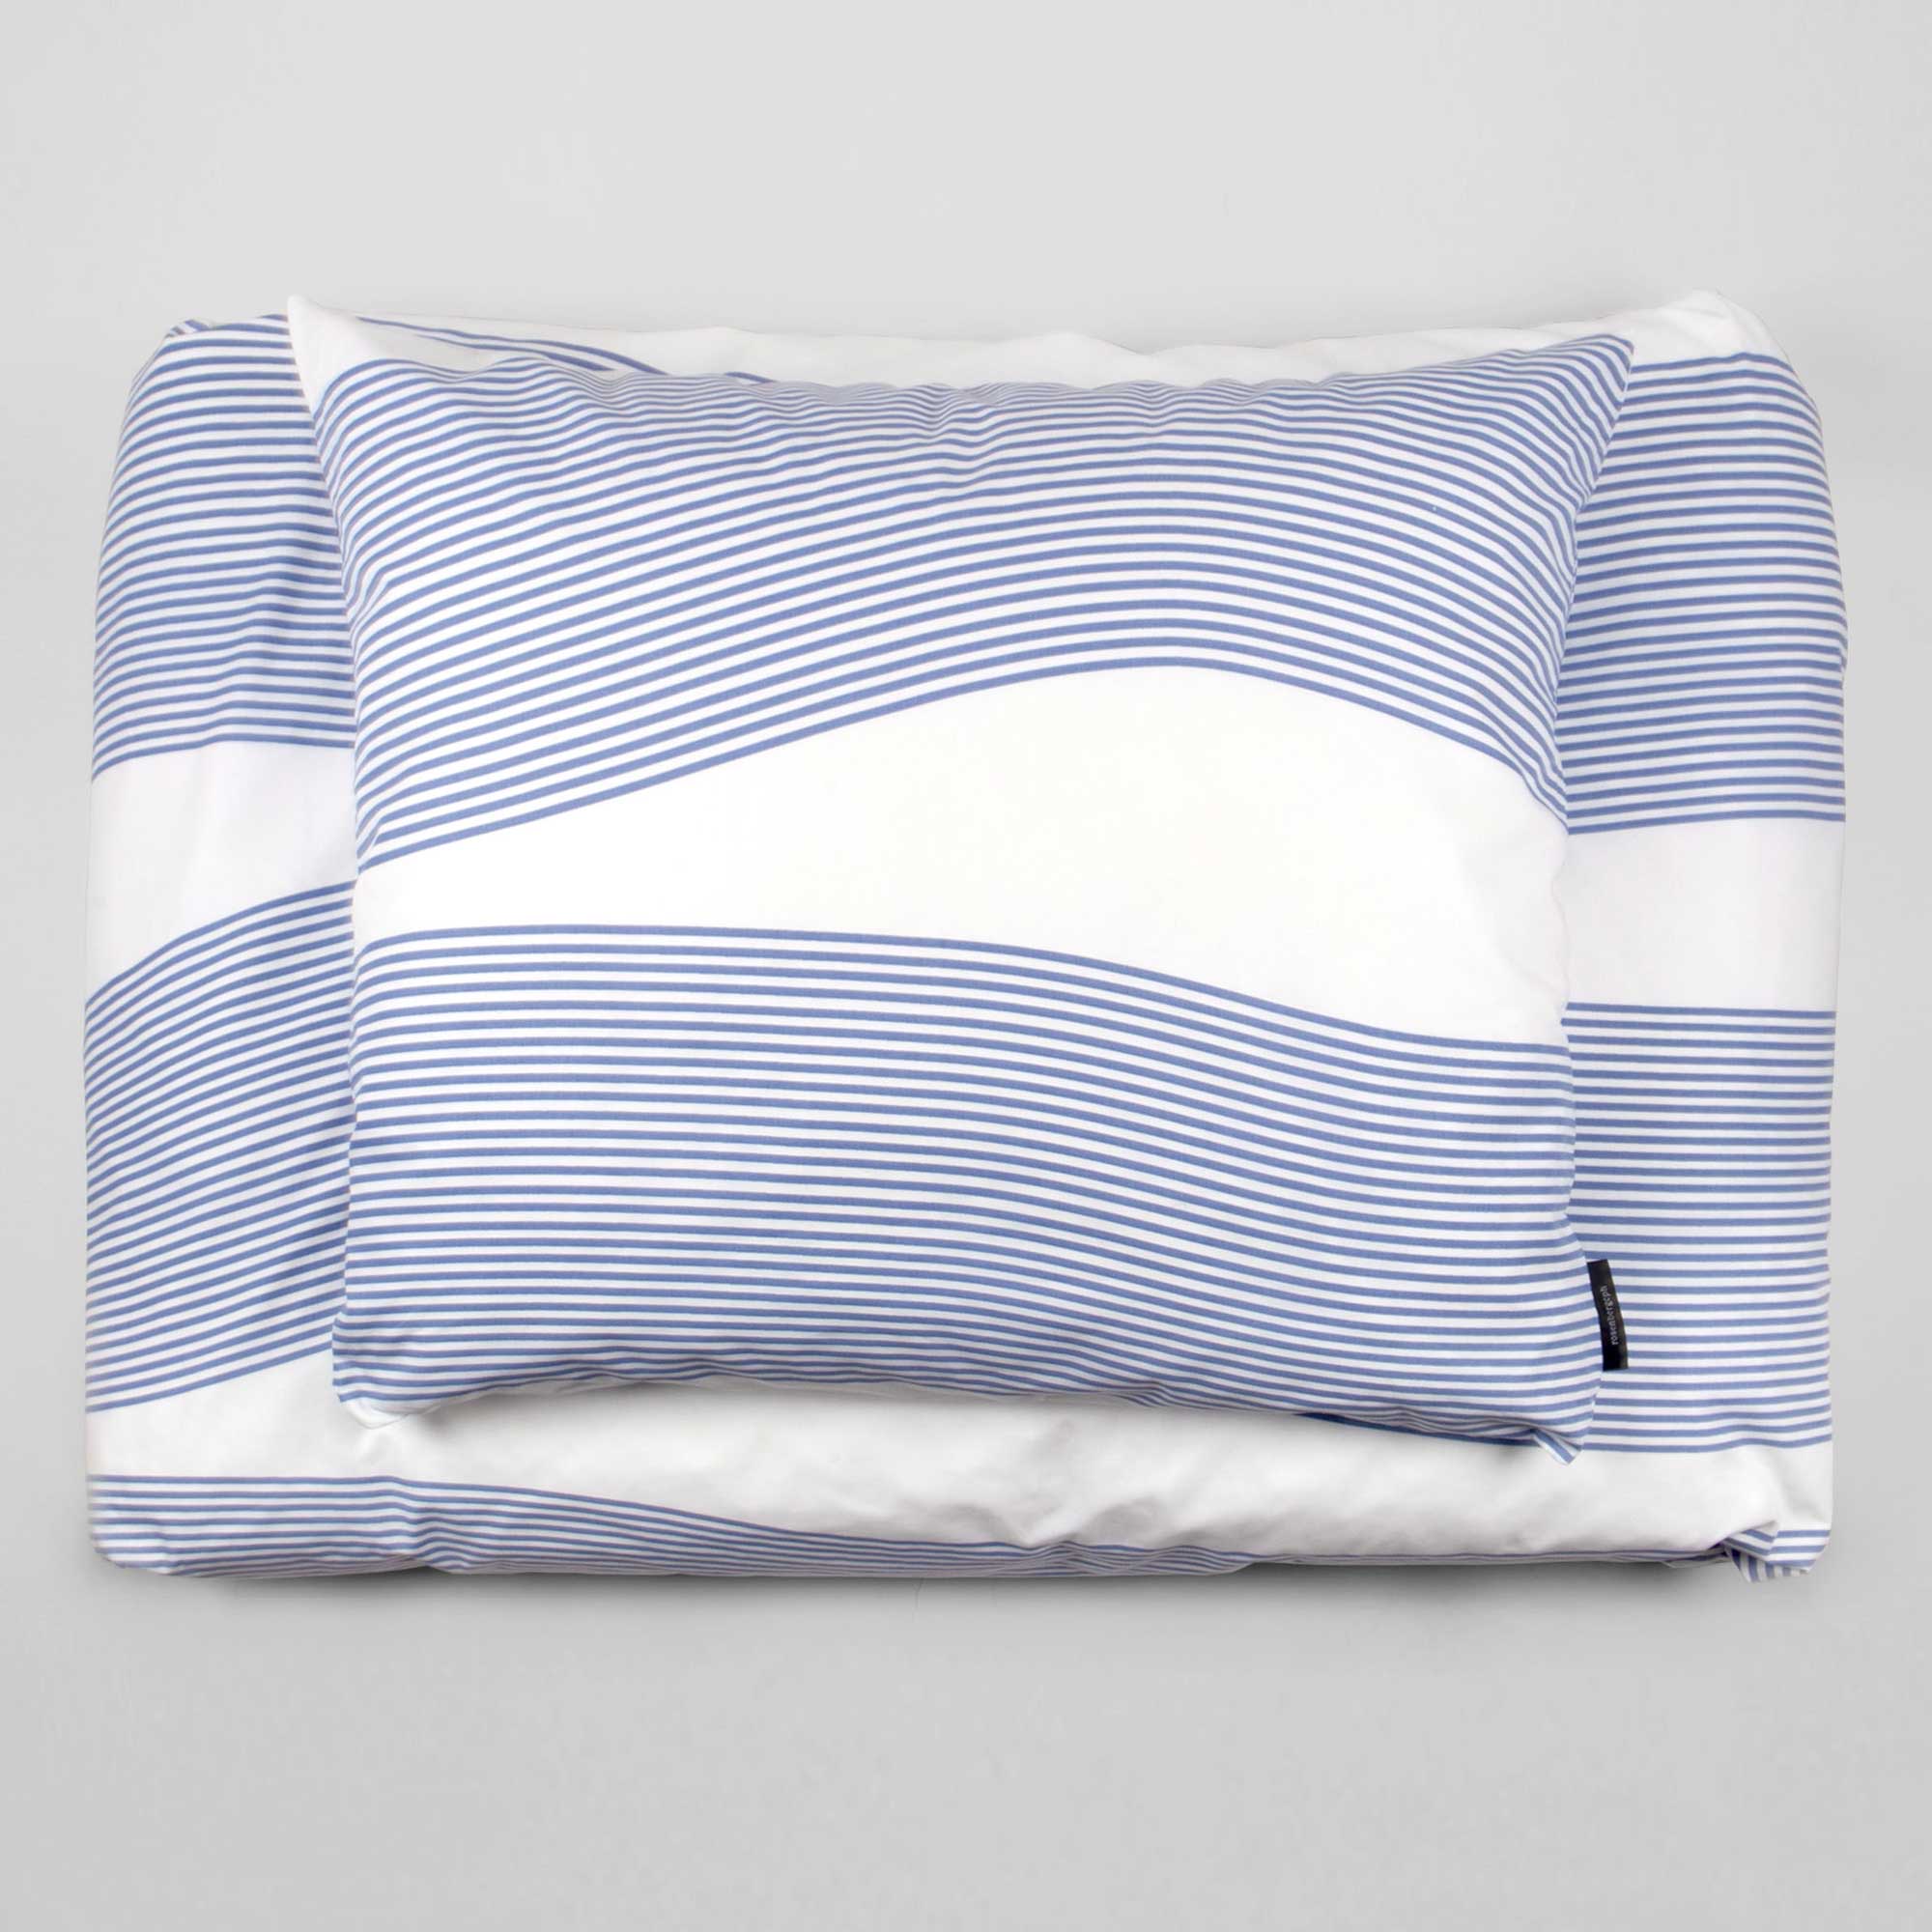 Bed linen, River blue, RosenbergCph, design by Anne Rosenberg